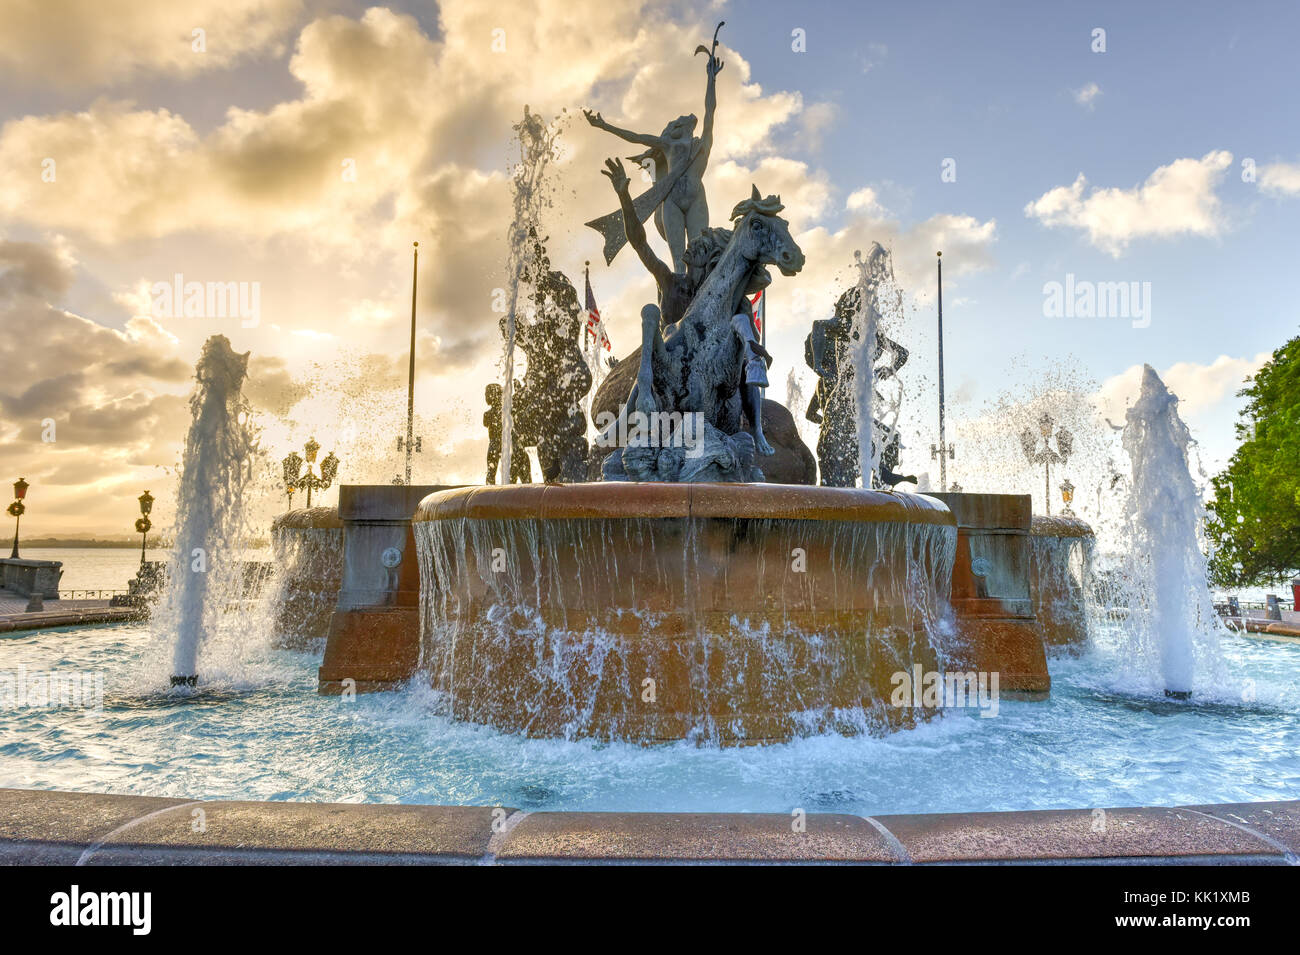 Fontaine raices Old San Juan à l'extrémité du paseo de la princesa, puerto rico. Banque D'Images